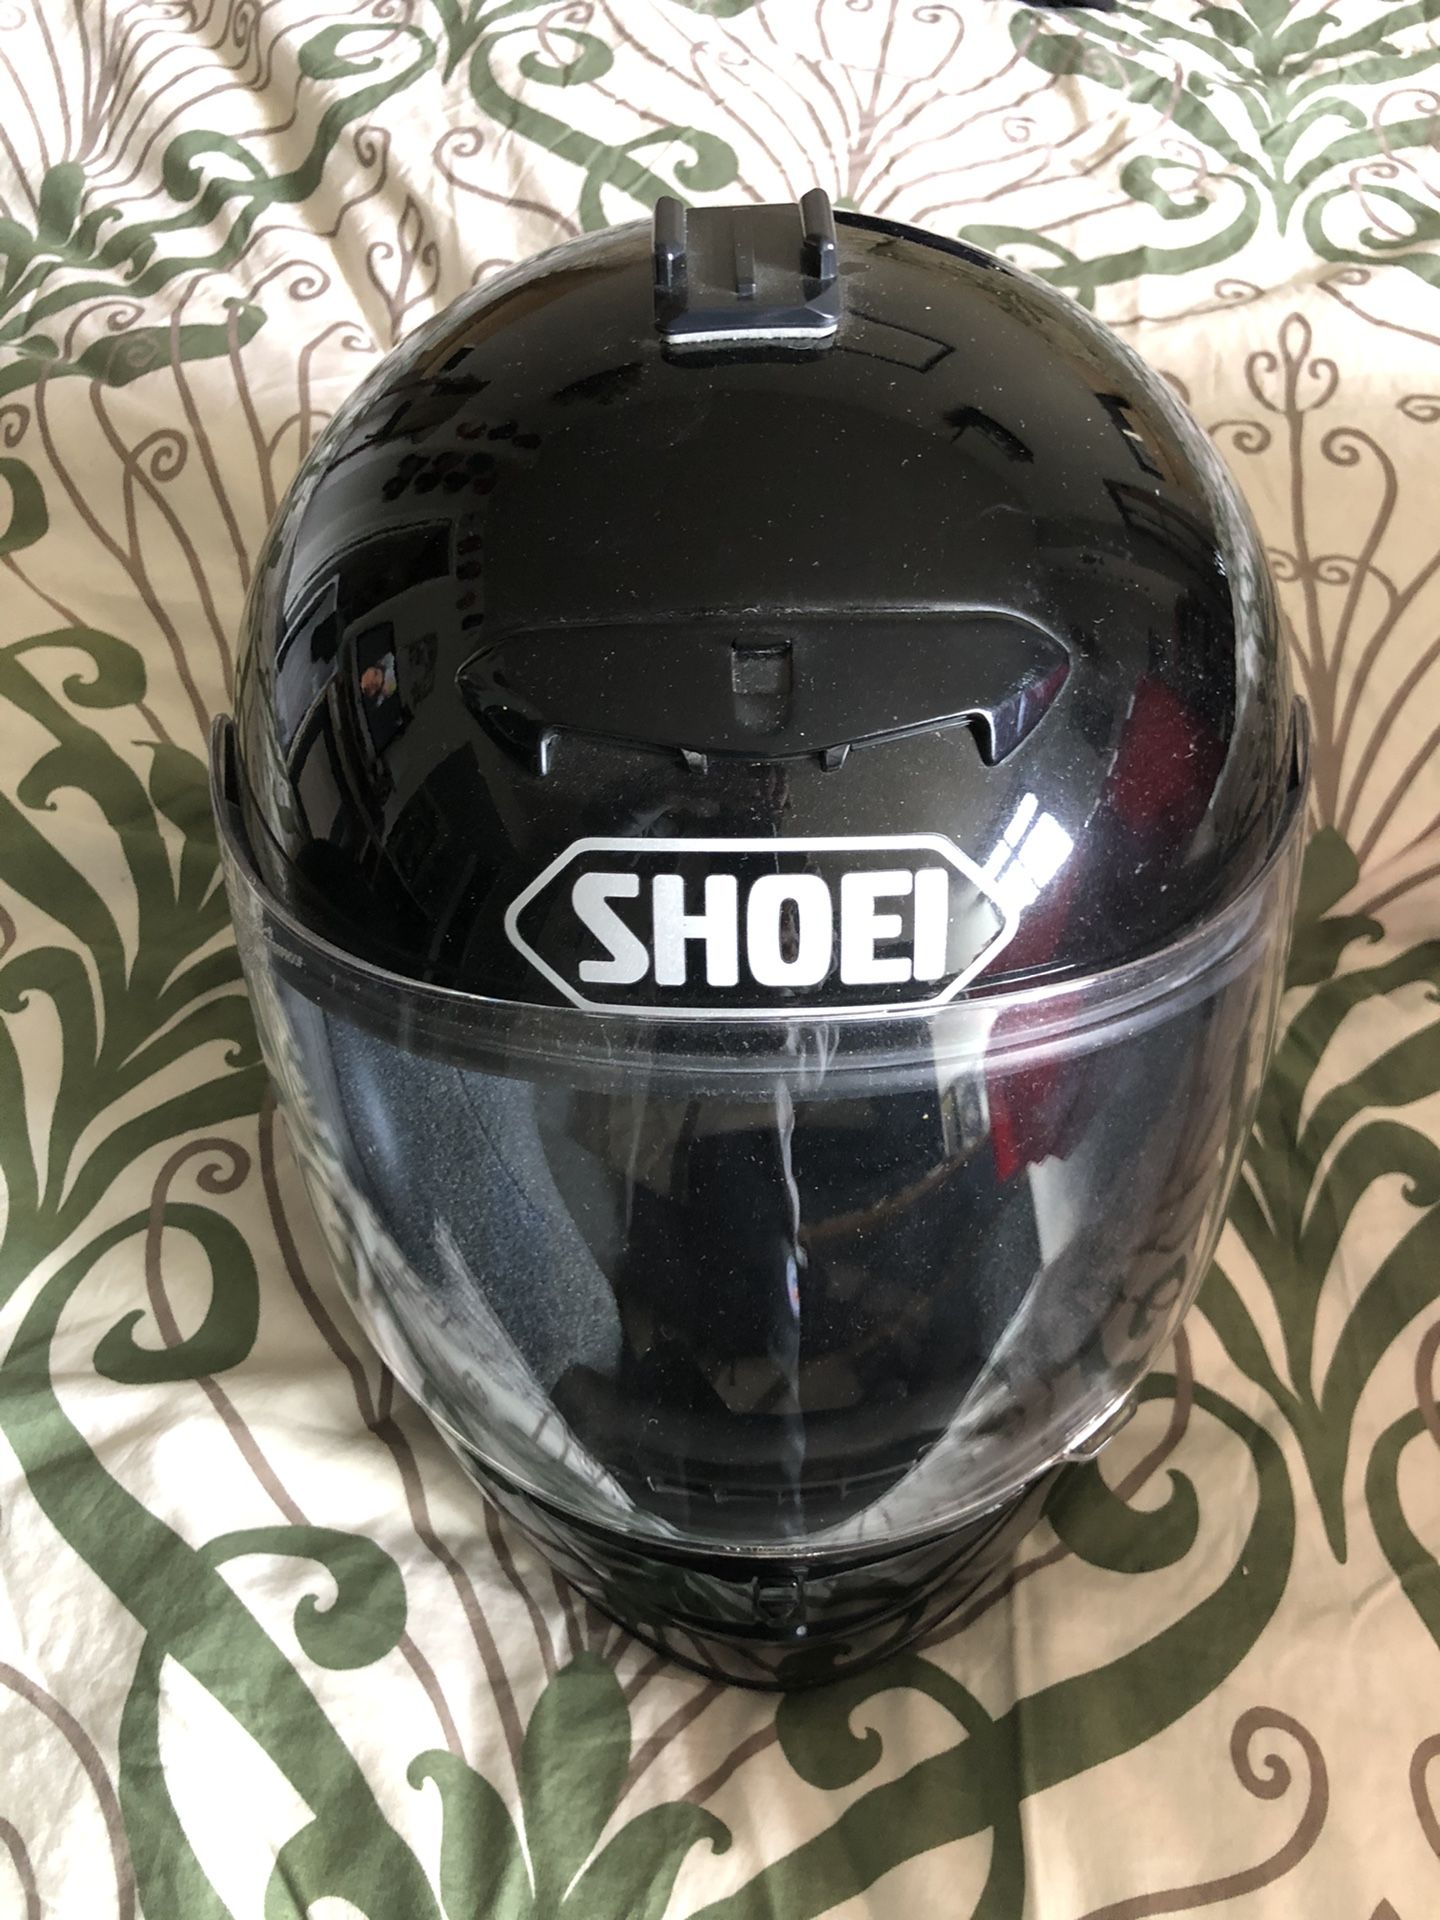 Shoei motorcycle helmet size M